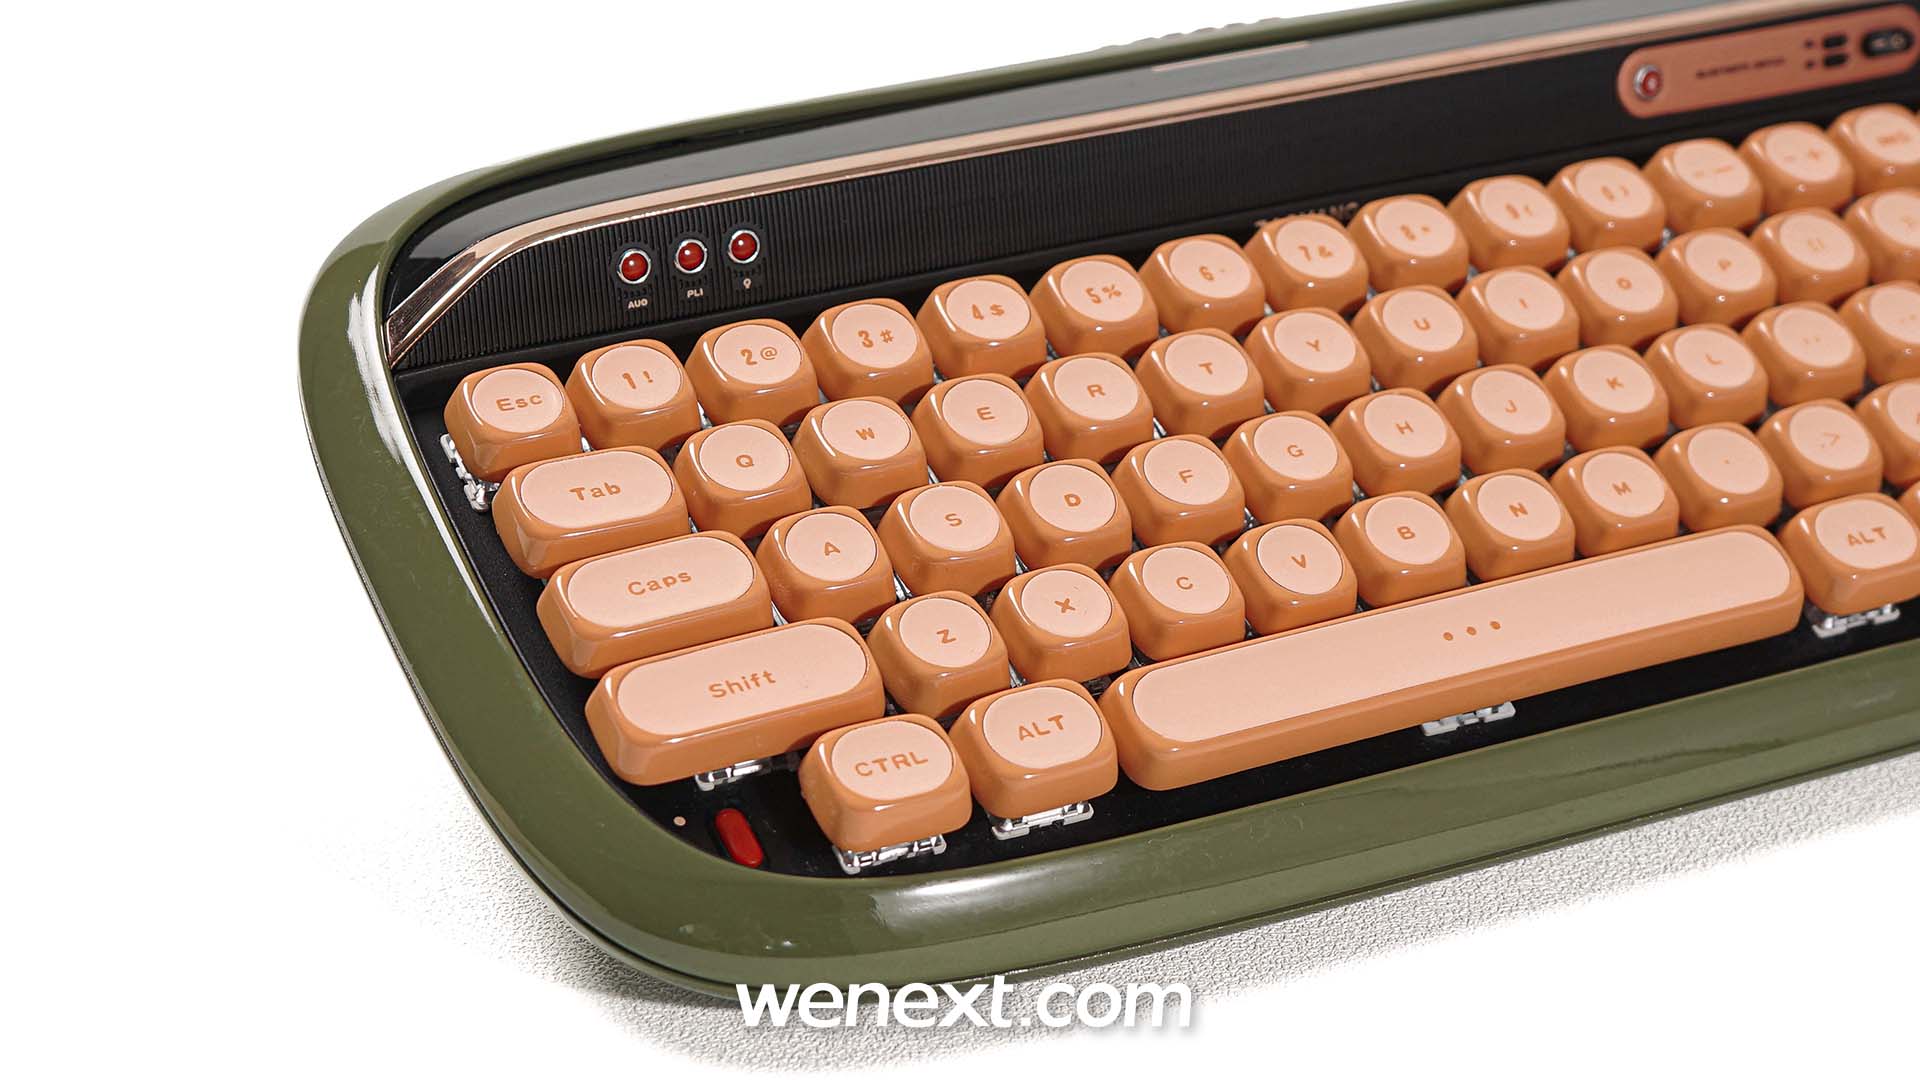 3d printed keycap, 3d printing keyboard, 3d printed mechanical keyboard